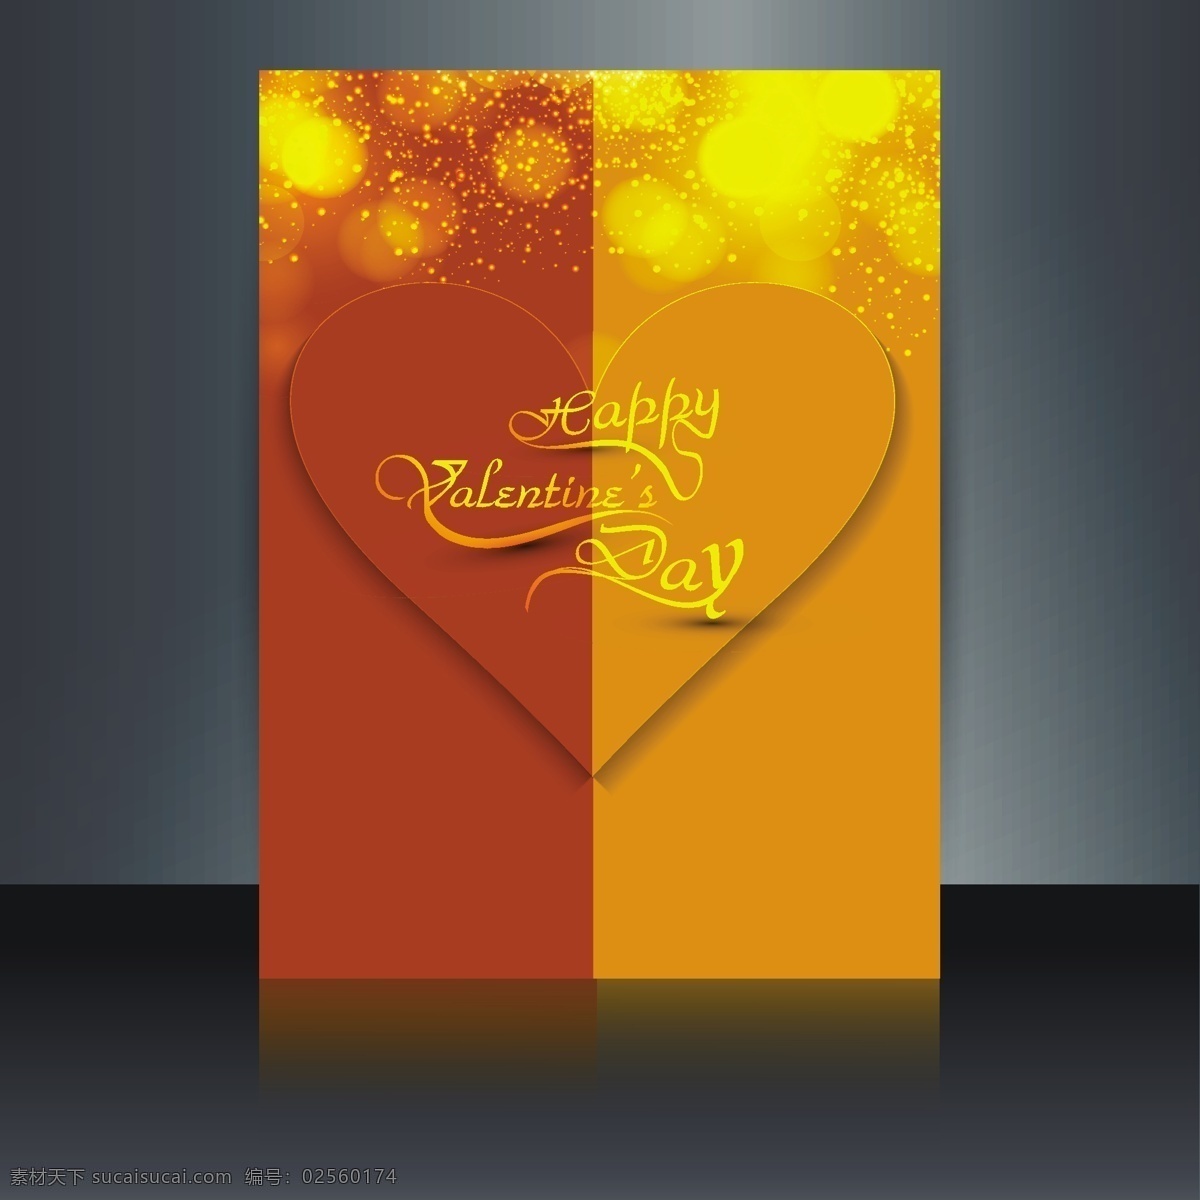 背景 虚化 情人节 卡片 心 抽象的 爱 卡 金 模板 庆祝 情侣 背景虚化 金色的 闪闪发光 浪漫 贺卡 问候 美丽 橙色